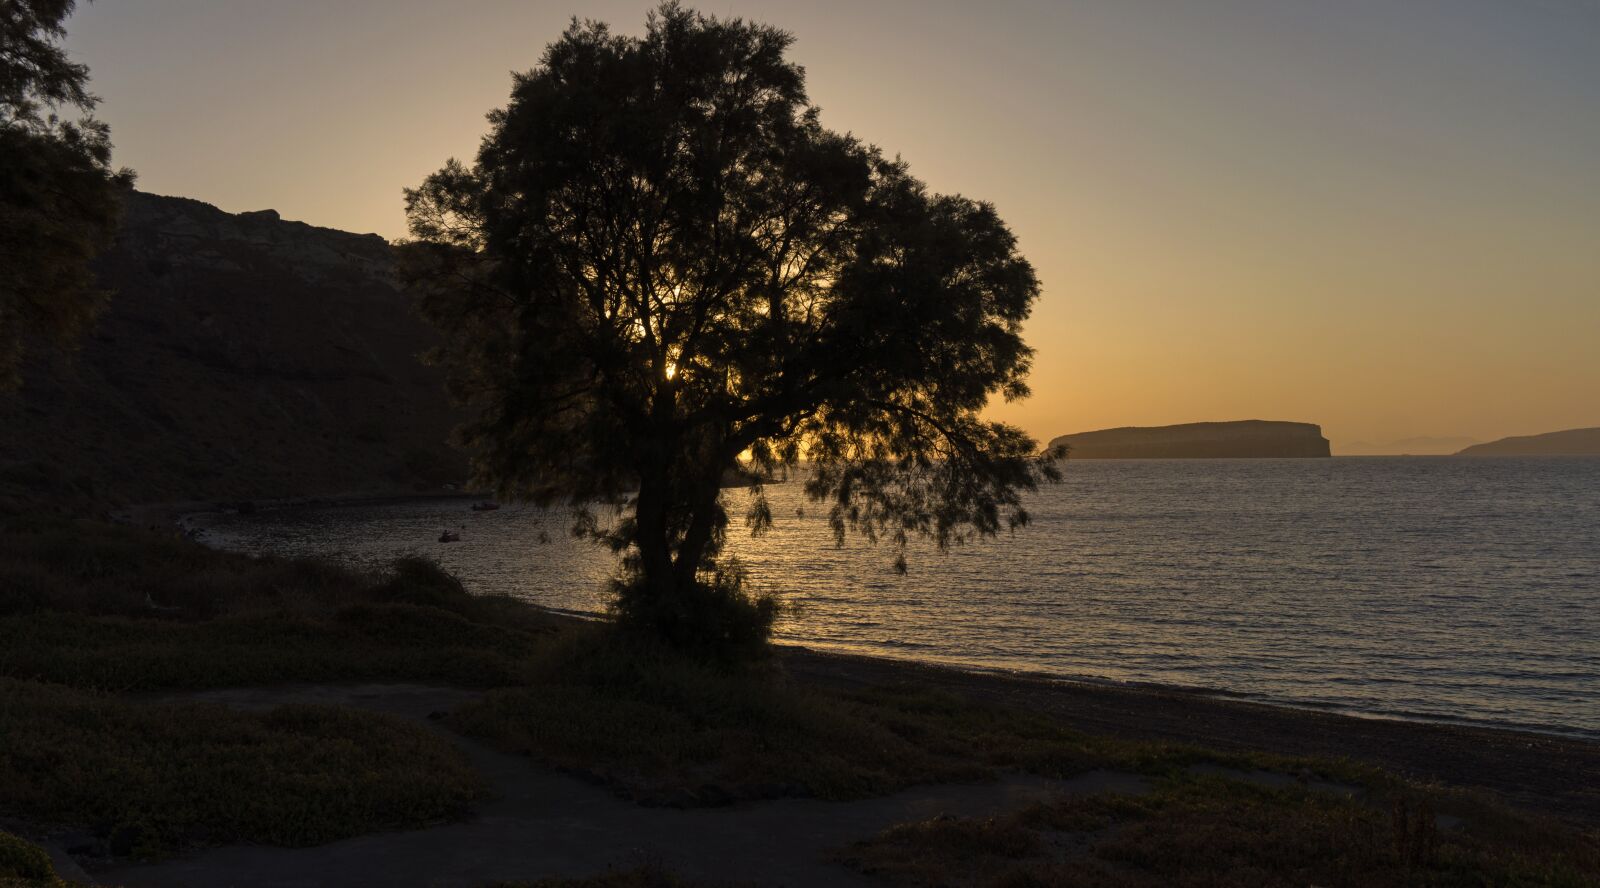 Sony Alpha NEX-7 sample photo. Santorini, beach, sunset photography